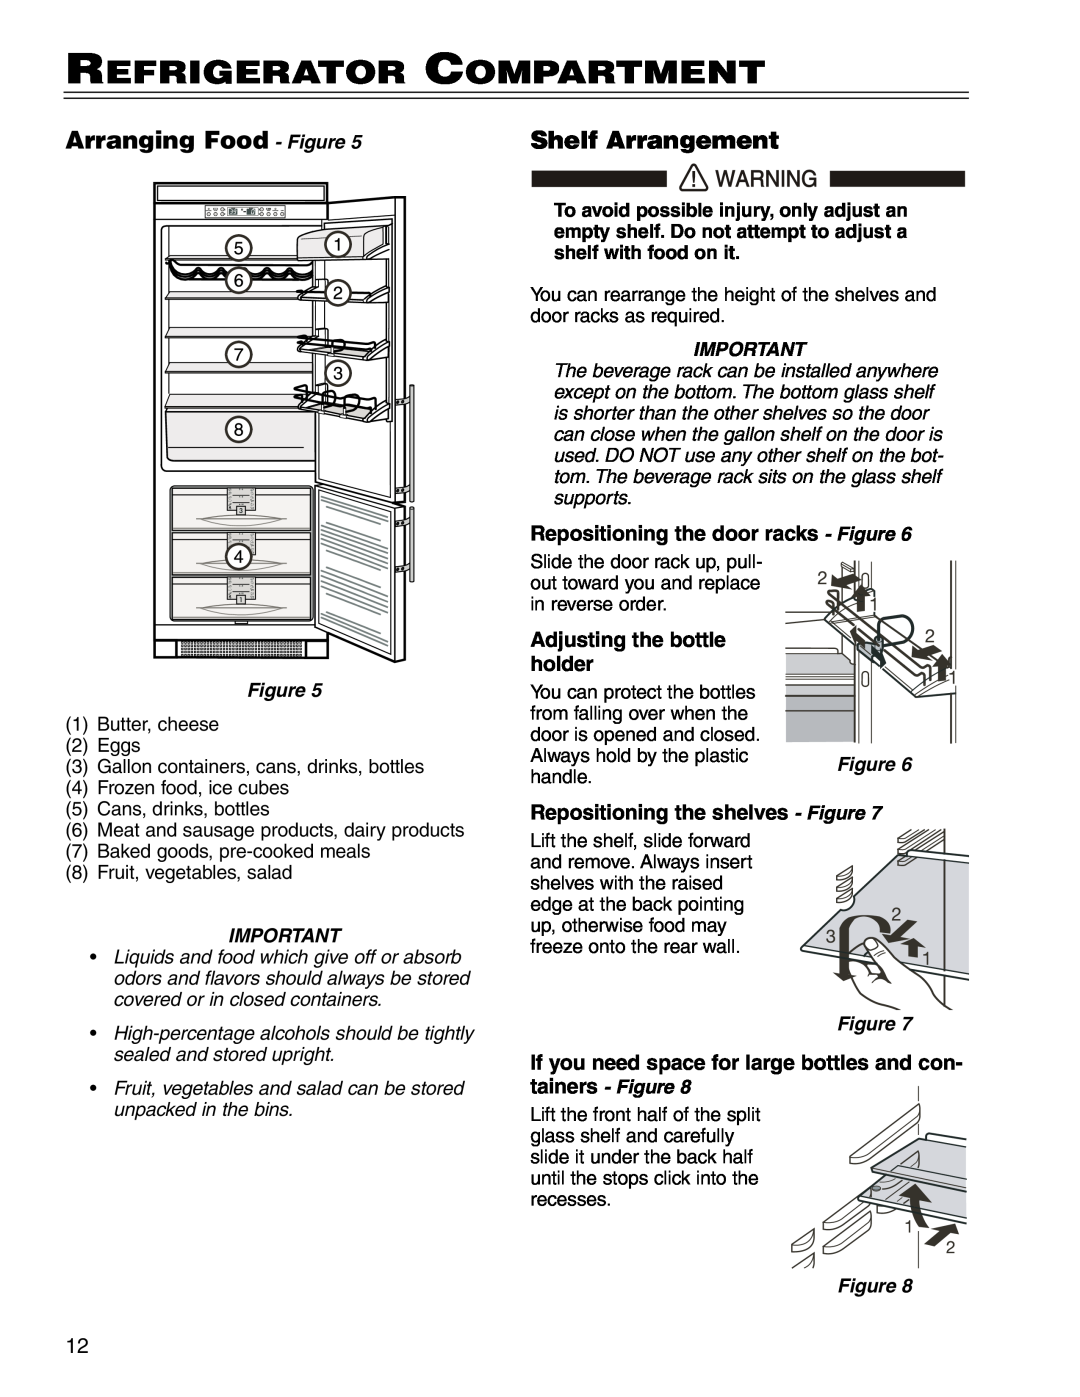 Liebherr CI16, CS16, C16 Refrigerator Compartment, Arranging Food - Figure, Shelf Arrangement, Adjusting the bottle, holder 